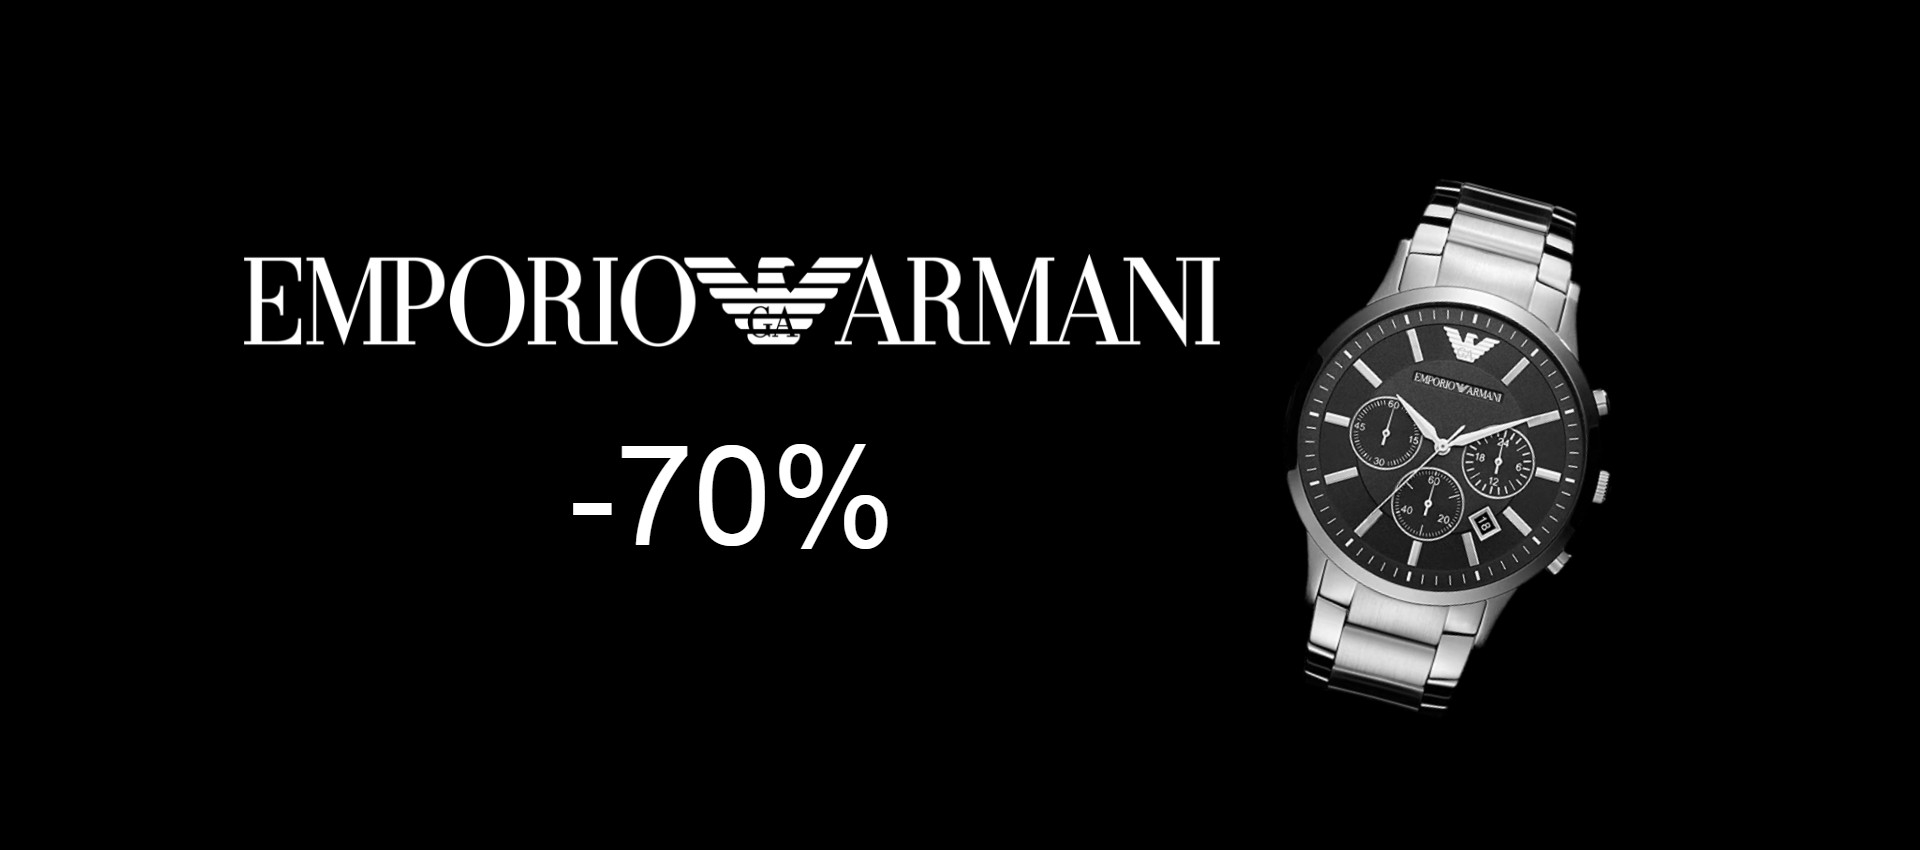 Orologio Emporio Armani con cronografo: SCONTO PAZZO del 70%